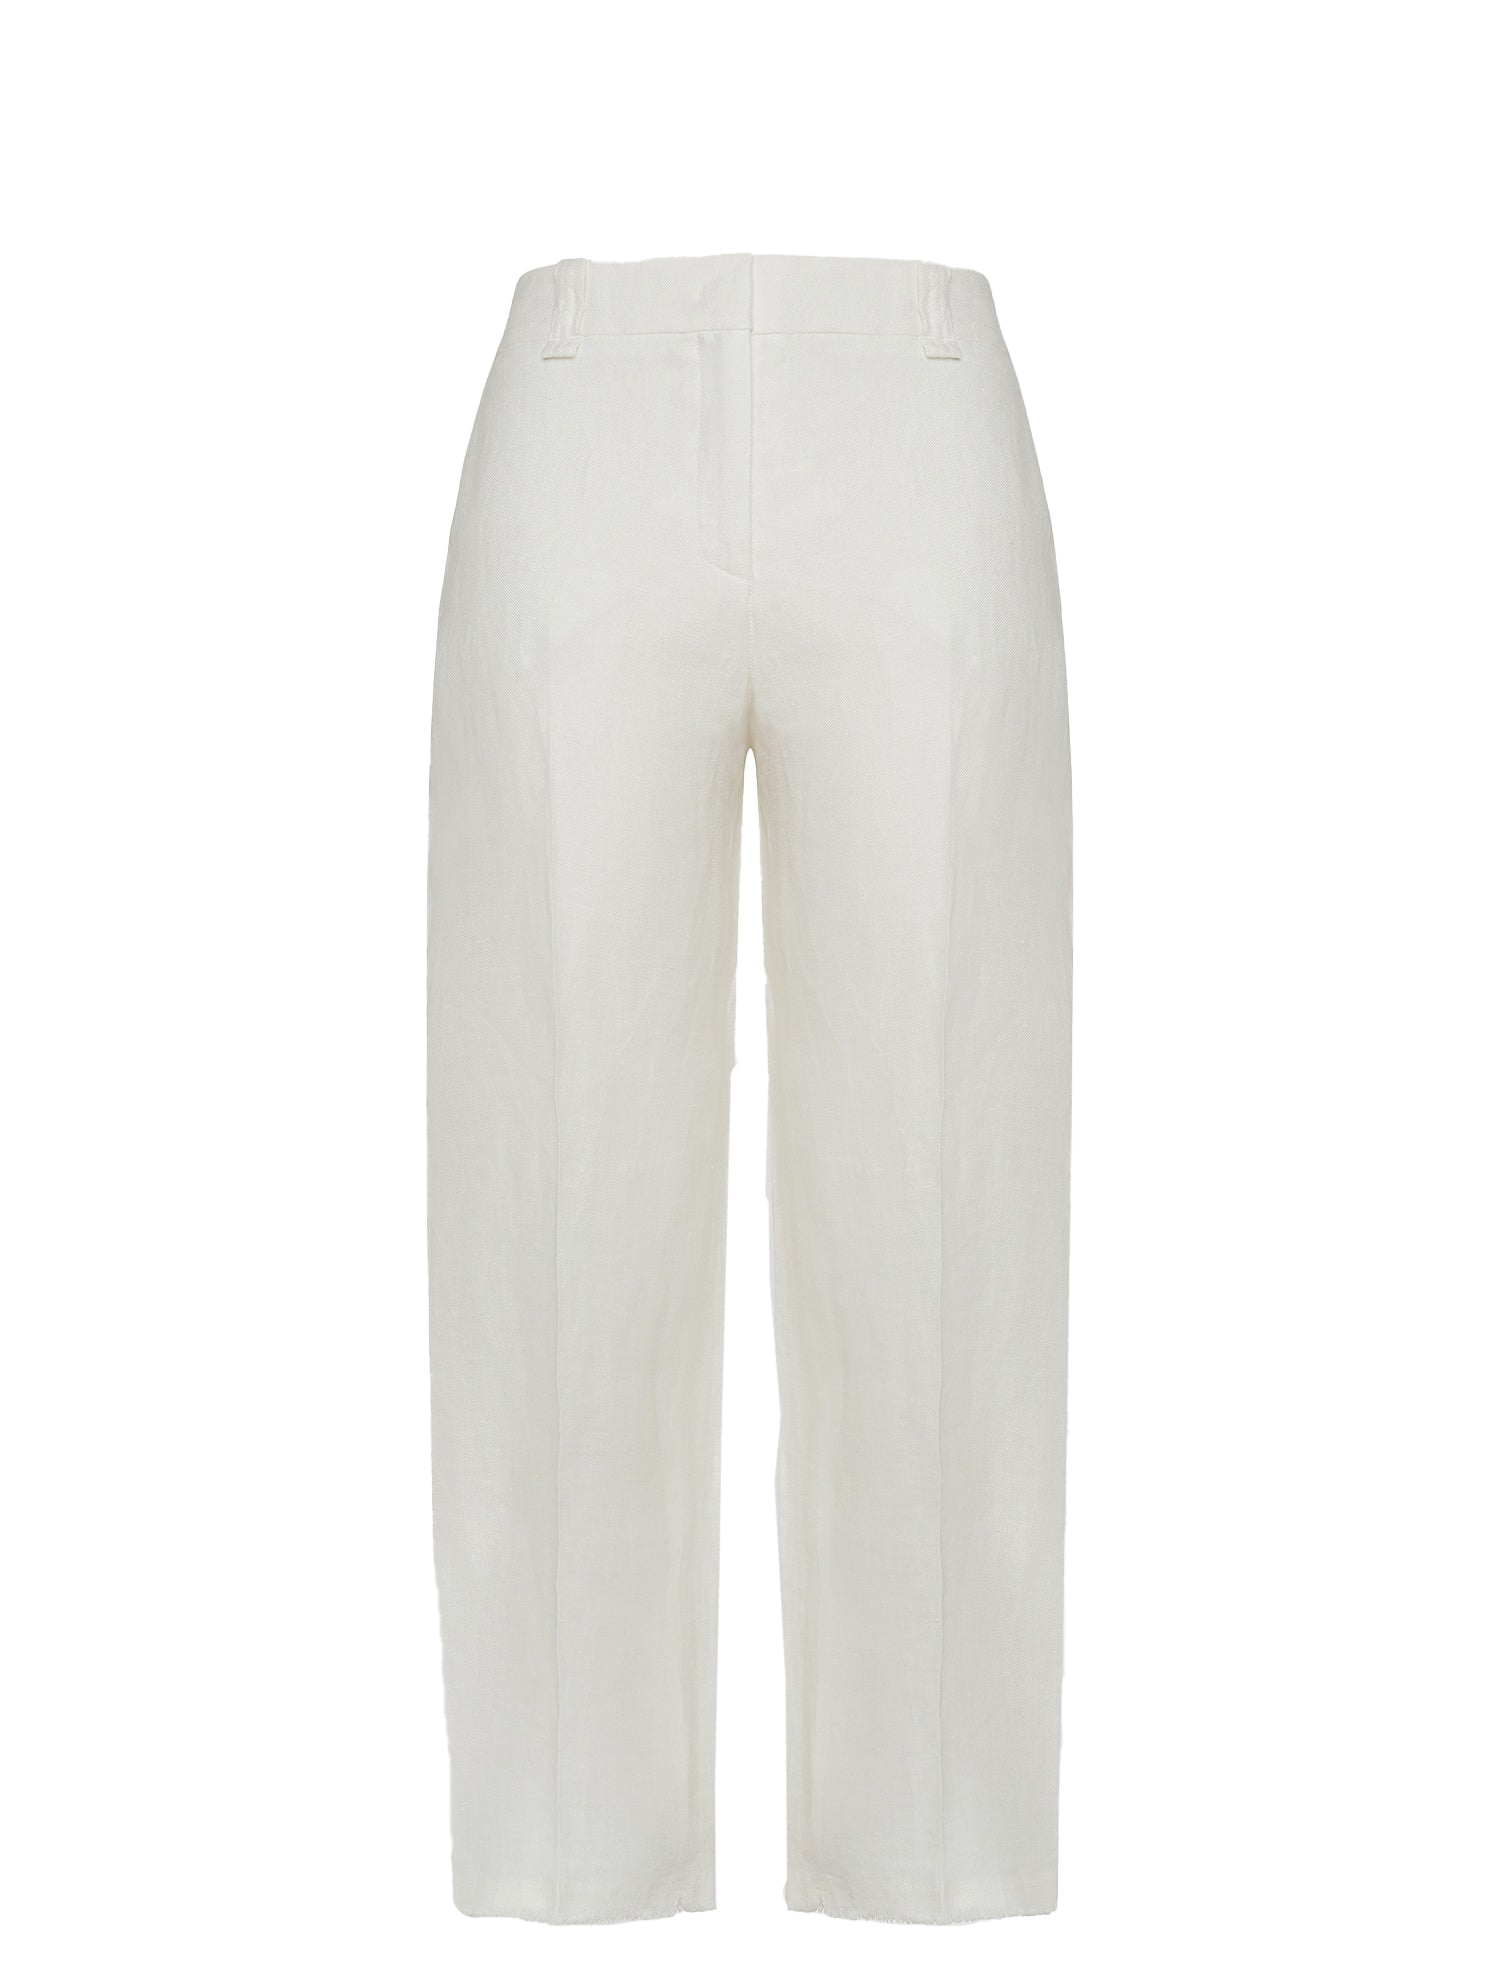 Pantaloni Peuterey Paraguan Bianco Donna